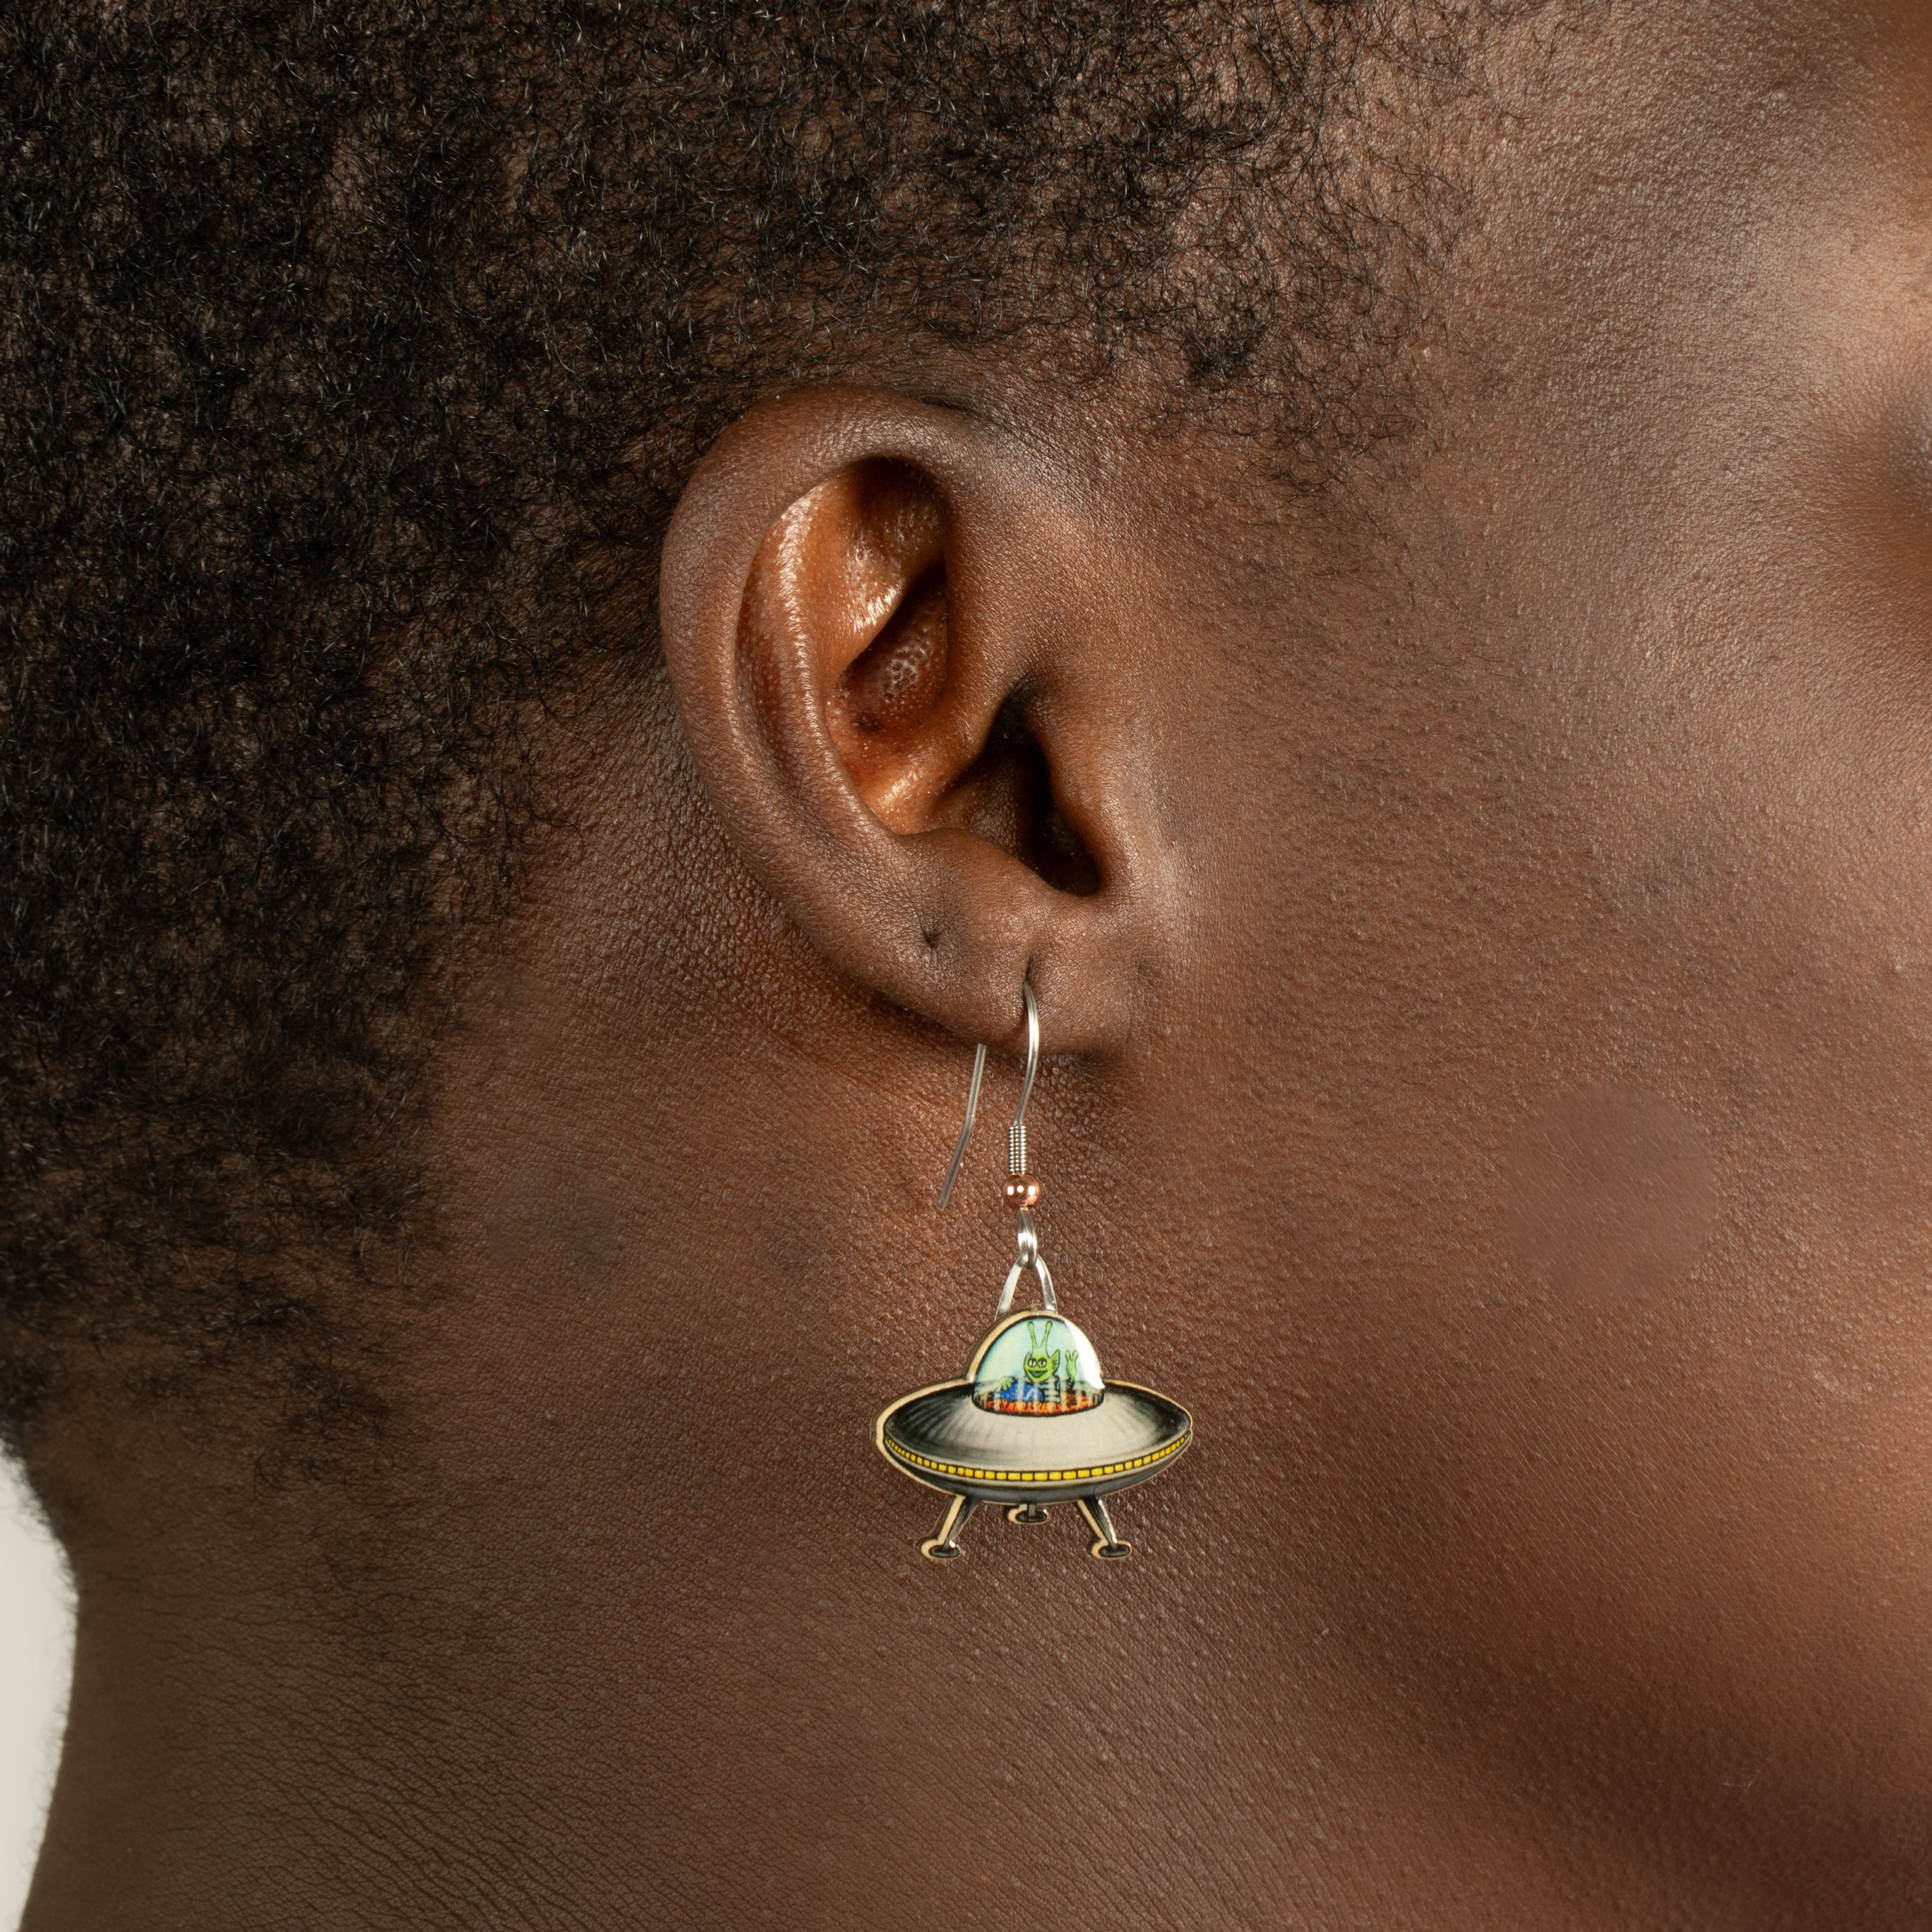 UFO & Aliens Earrings